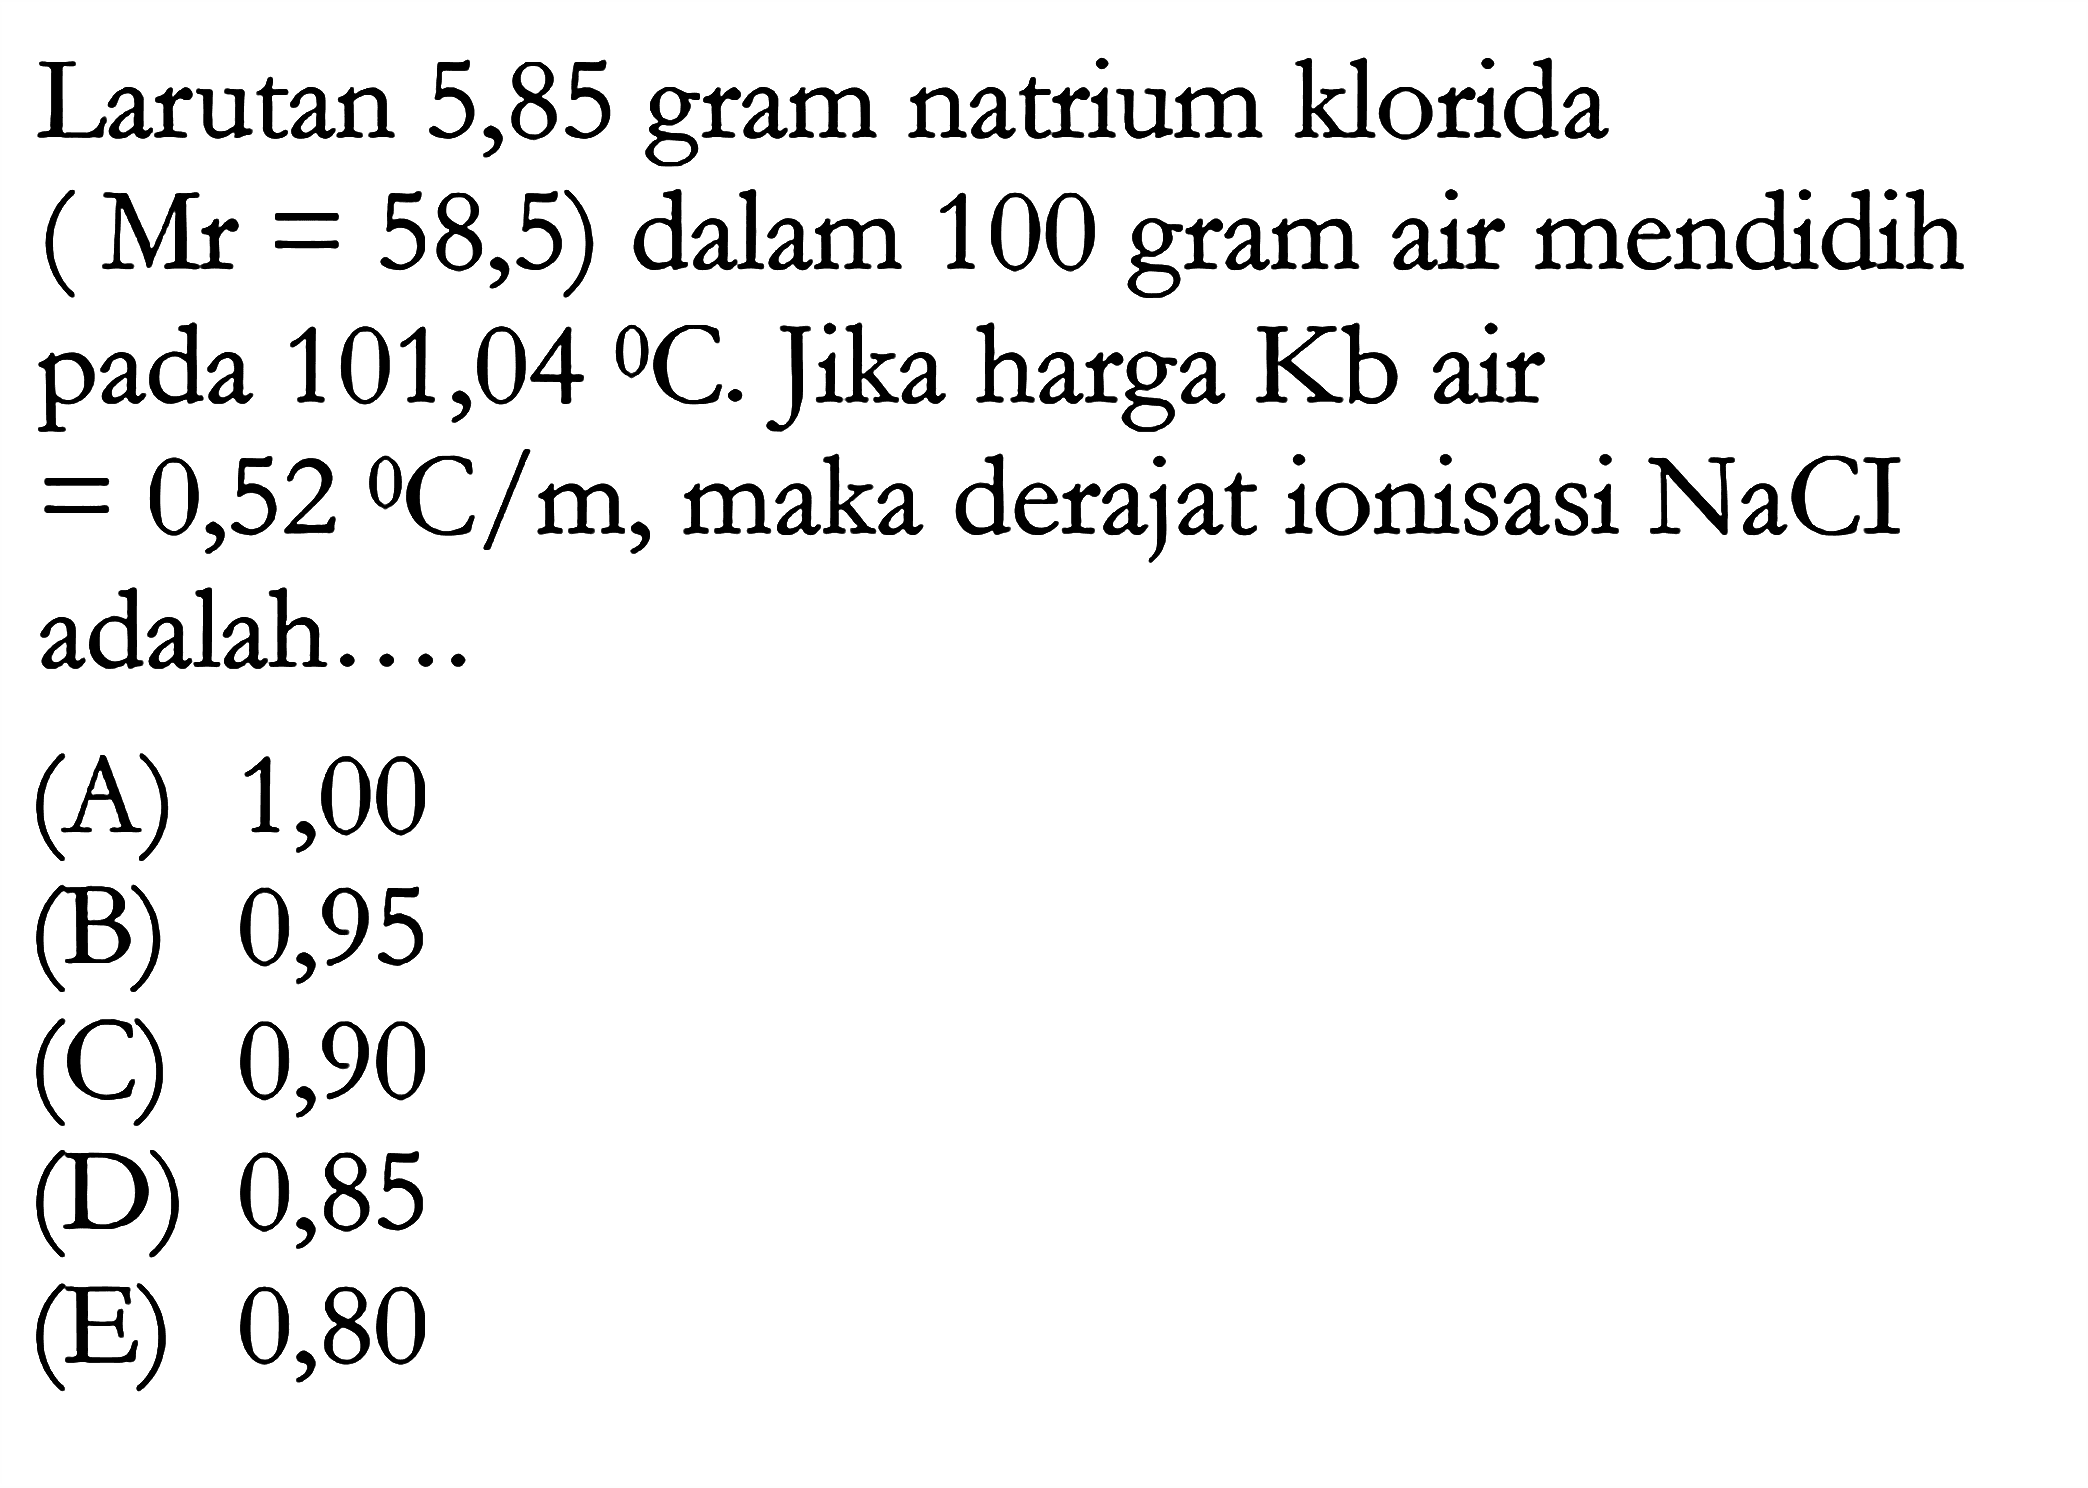 Larutan 5,85 gram natrium klorida (Mr = 58,5) dalam 100 gram air mendidih pada 101,04 C. Jika harga Kb air = 0,52 C/m, maka derajat ionisasi NaCI adalah ...